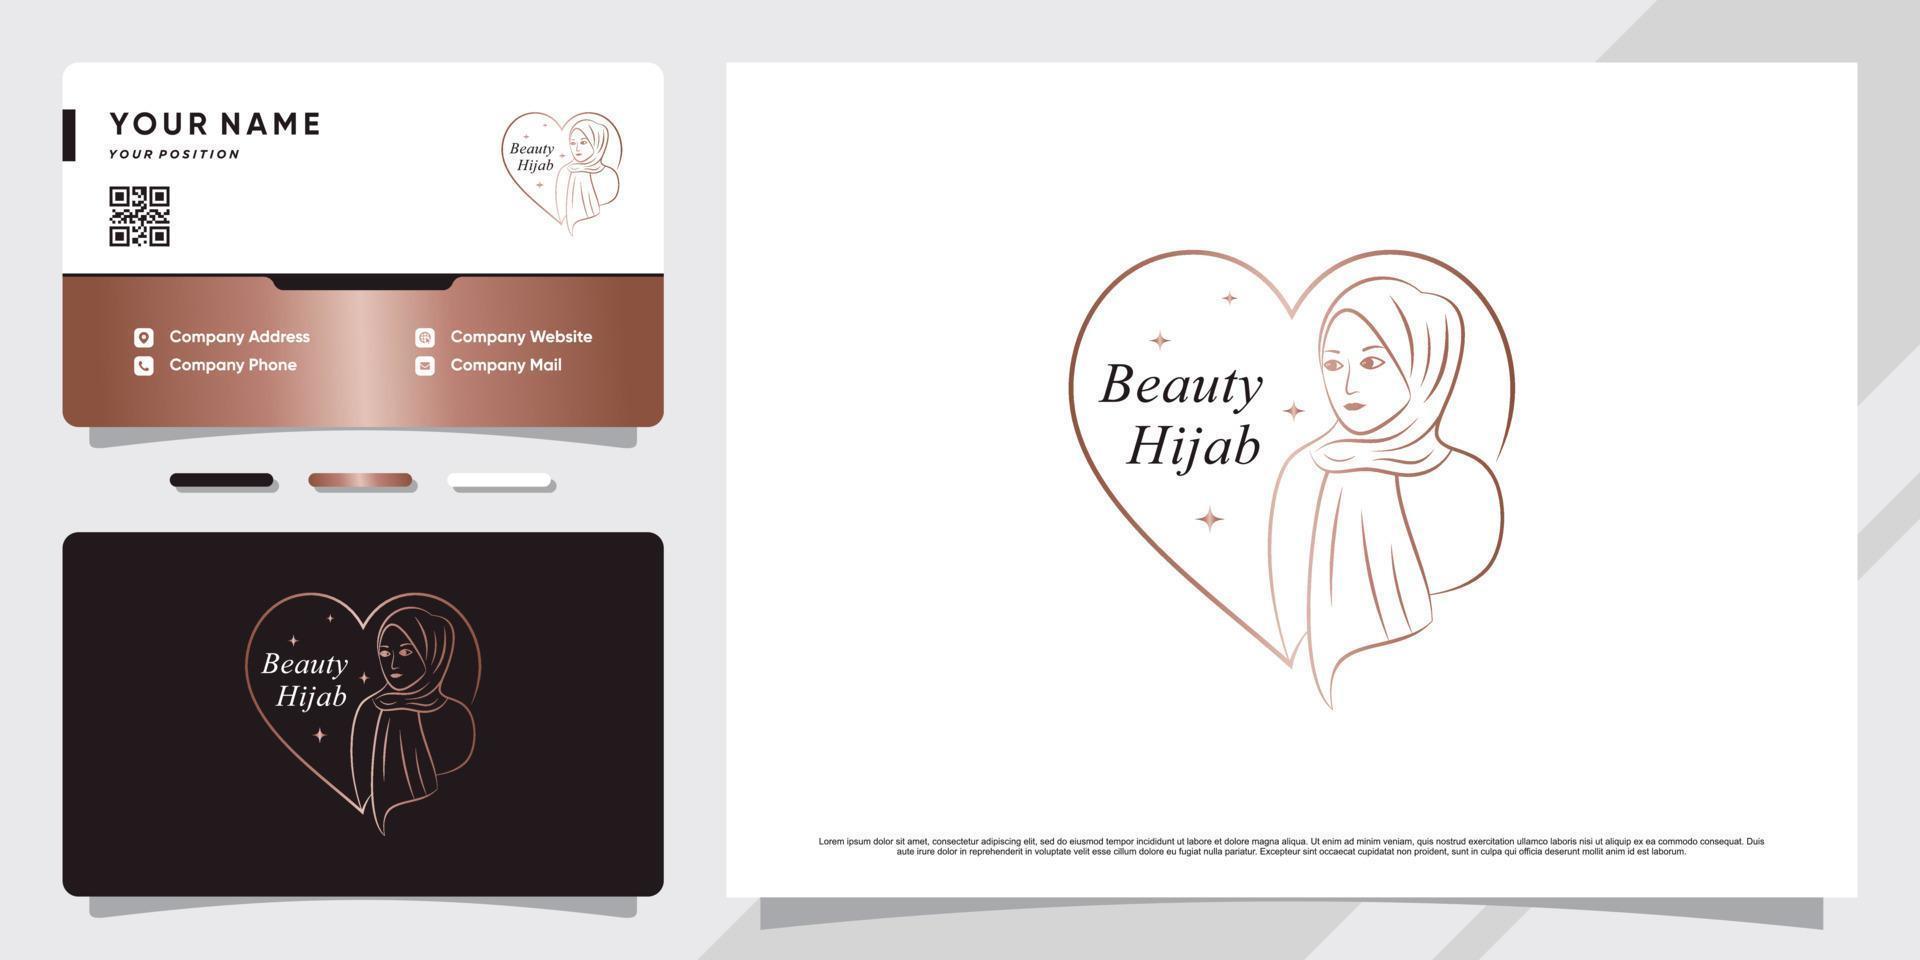 bellezza donna logo musulmano che indossa l'hijab con elemento creativo e biglietto da visita design vettore premium